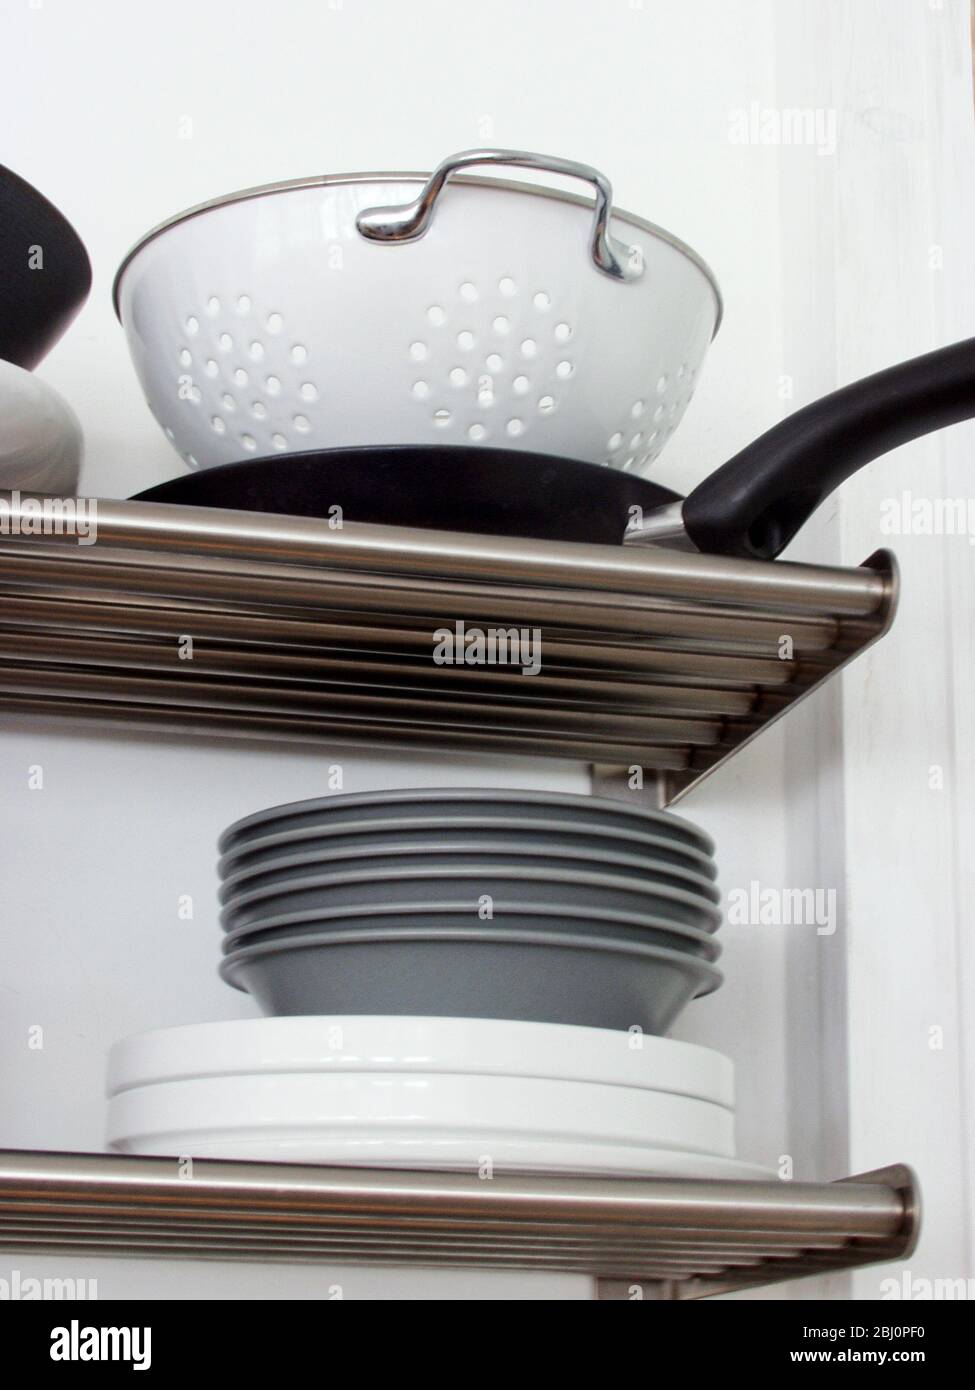 Estantes de cocina de acero inoxidable modernos con pilas de platos y utensilios - Foto de stock